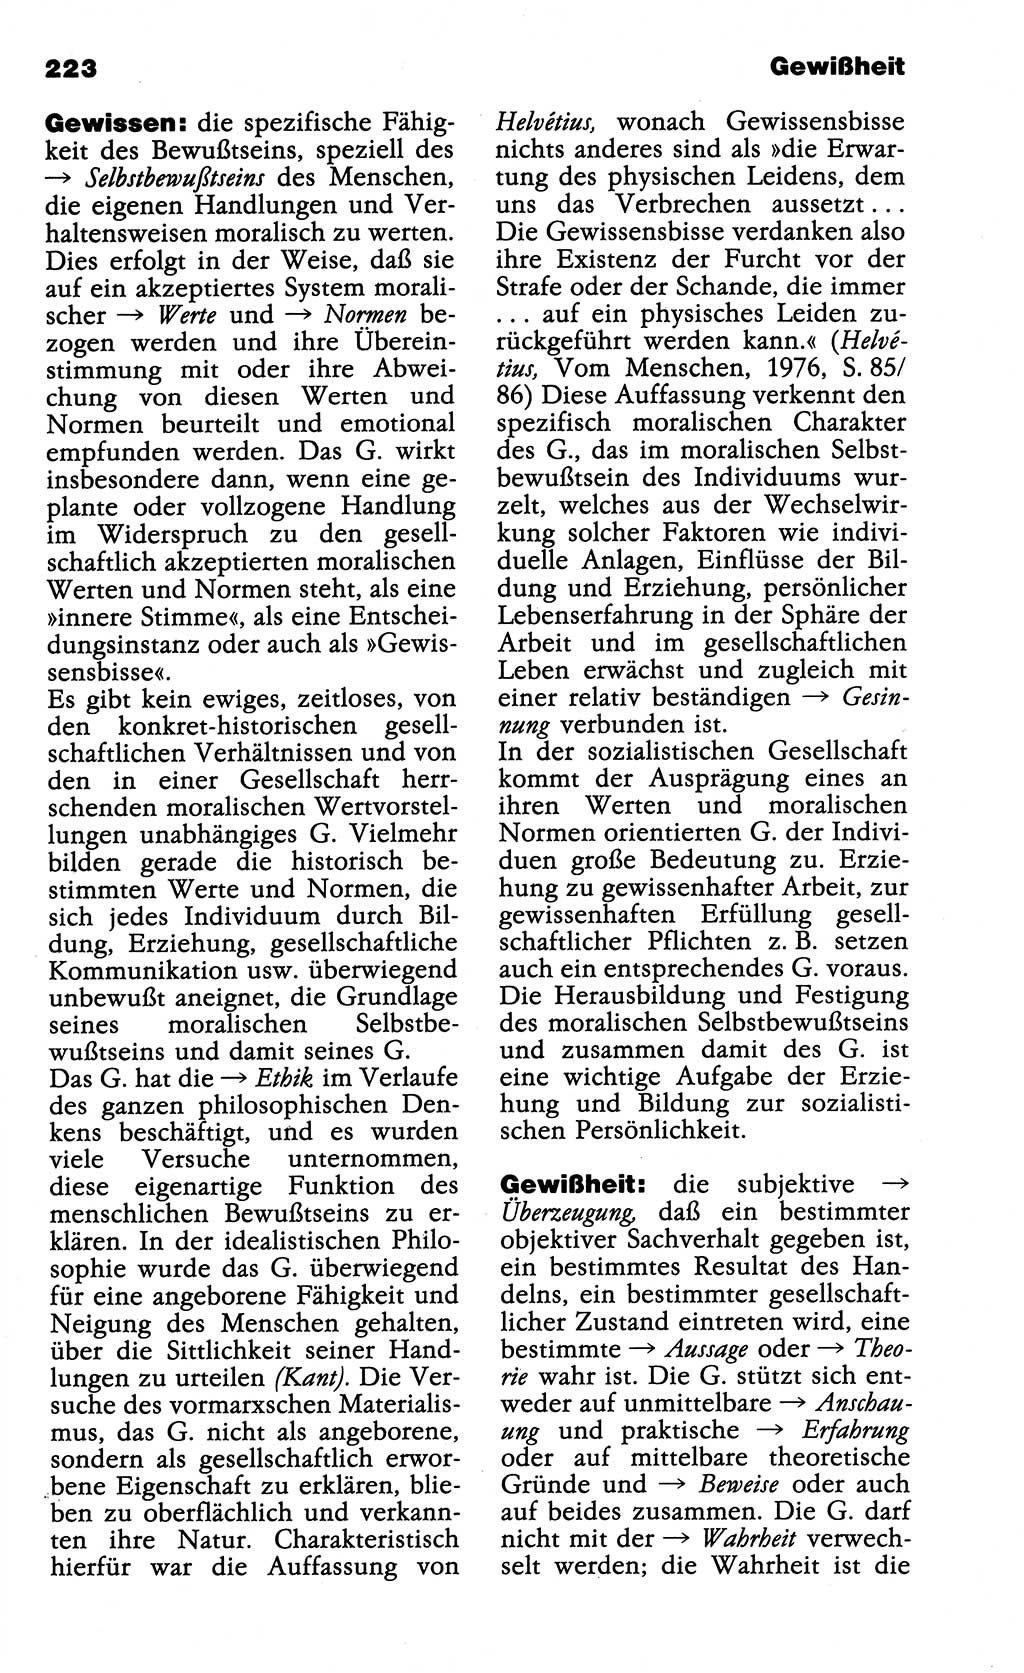 Wörterbuch der marxistisch-leninistischen Philosophie [Deutsche Demokratische Republik (DDR)] 1985, Seite 223 (Wb. ML Phil. DDR 1985, S. 223)